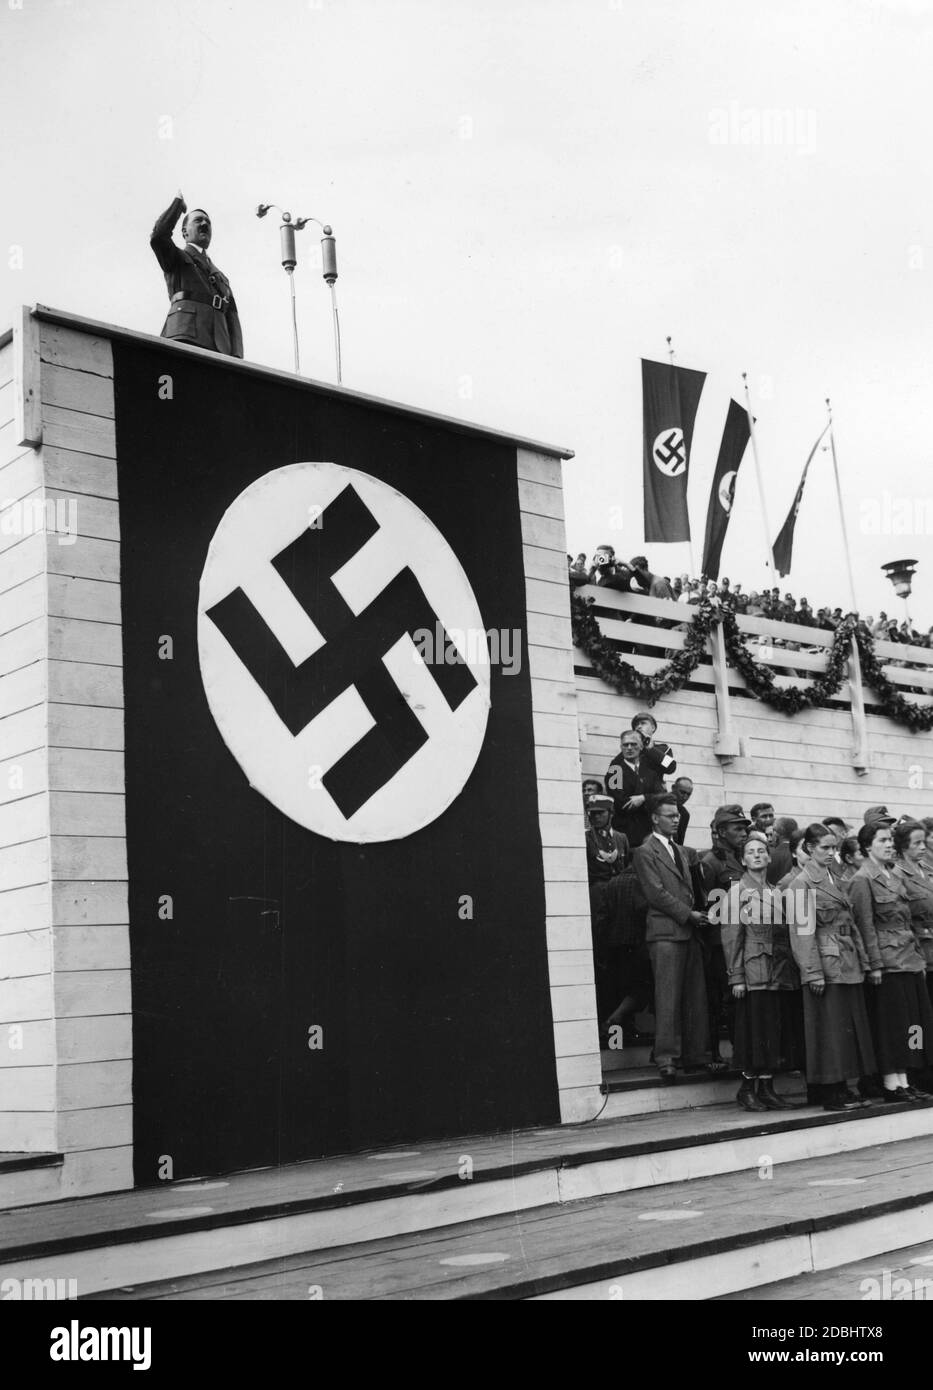 Adolf Hitler tient un discours lors de la parade du Service du travail nazi sur le stand de l'orateur décoré de la croix gammée sur Zeppelin Field sur le terrain du rassemblement du parti Reich de Nuremberg. À droite du drapeau de la swastika est suspendu le drapeau de la RAD. Au-dessous de la tribune se trouvent plusieurs femmes du Service du travail. Banque D'Images